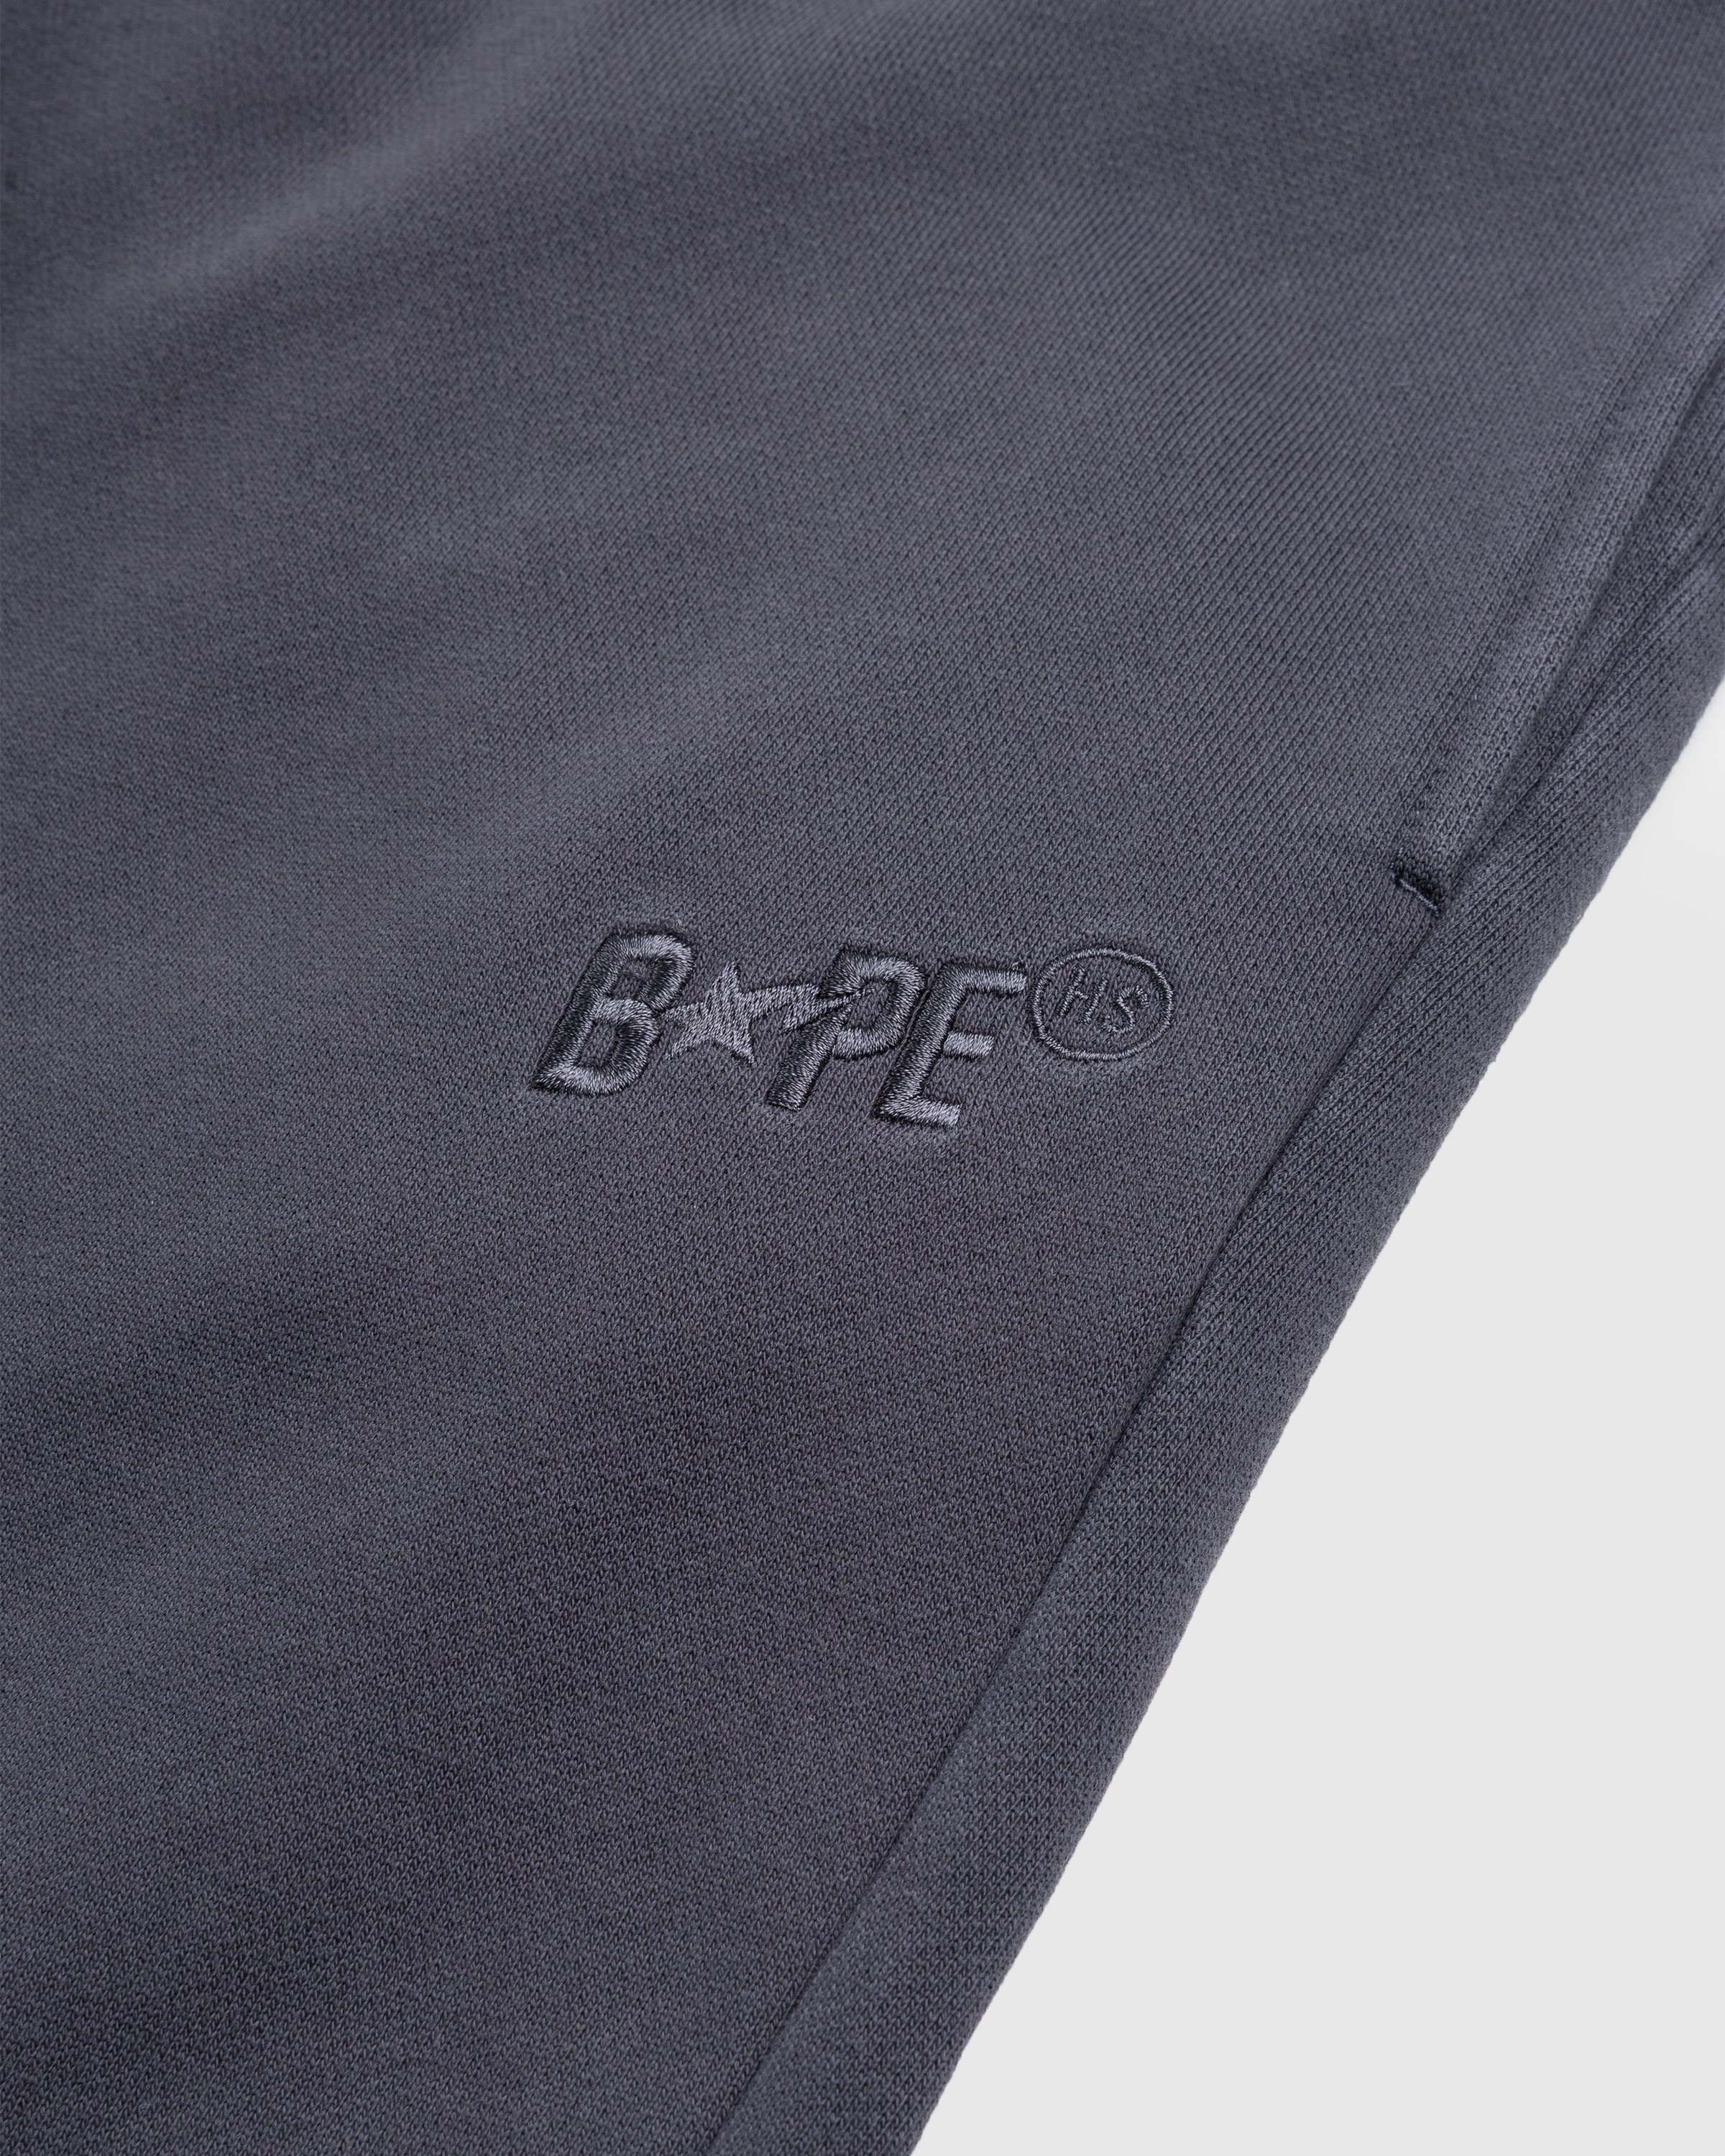 BAPE x Highsnobiety - Heavy Washed Sweat Pants Charcoal - Clothing - Grey - Image 7